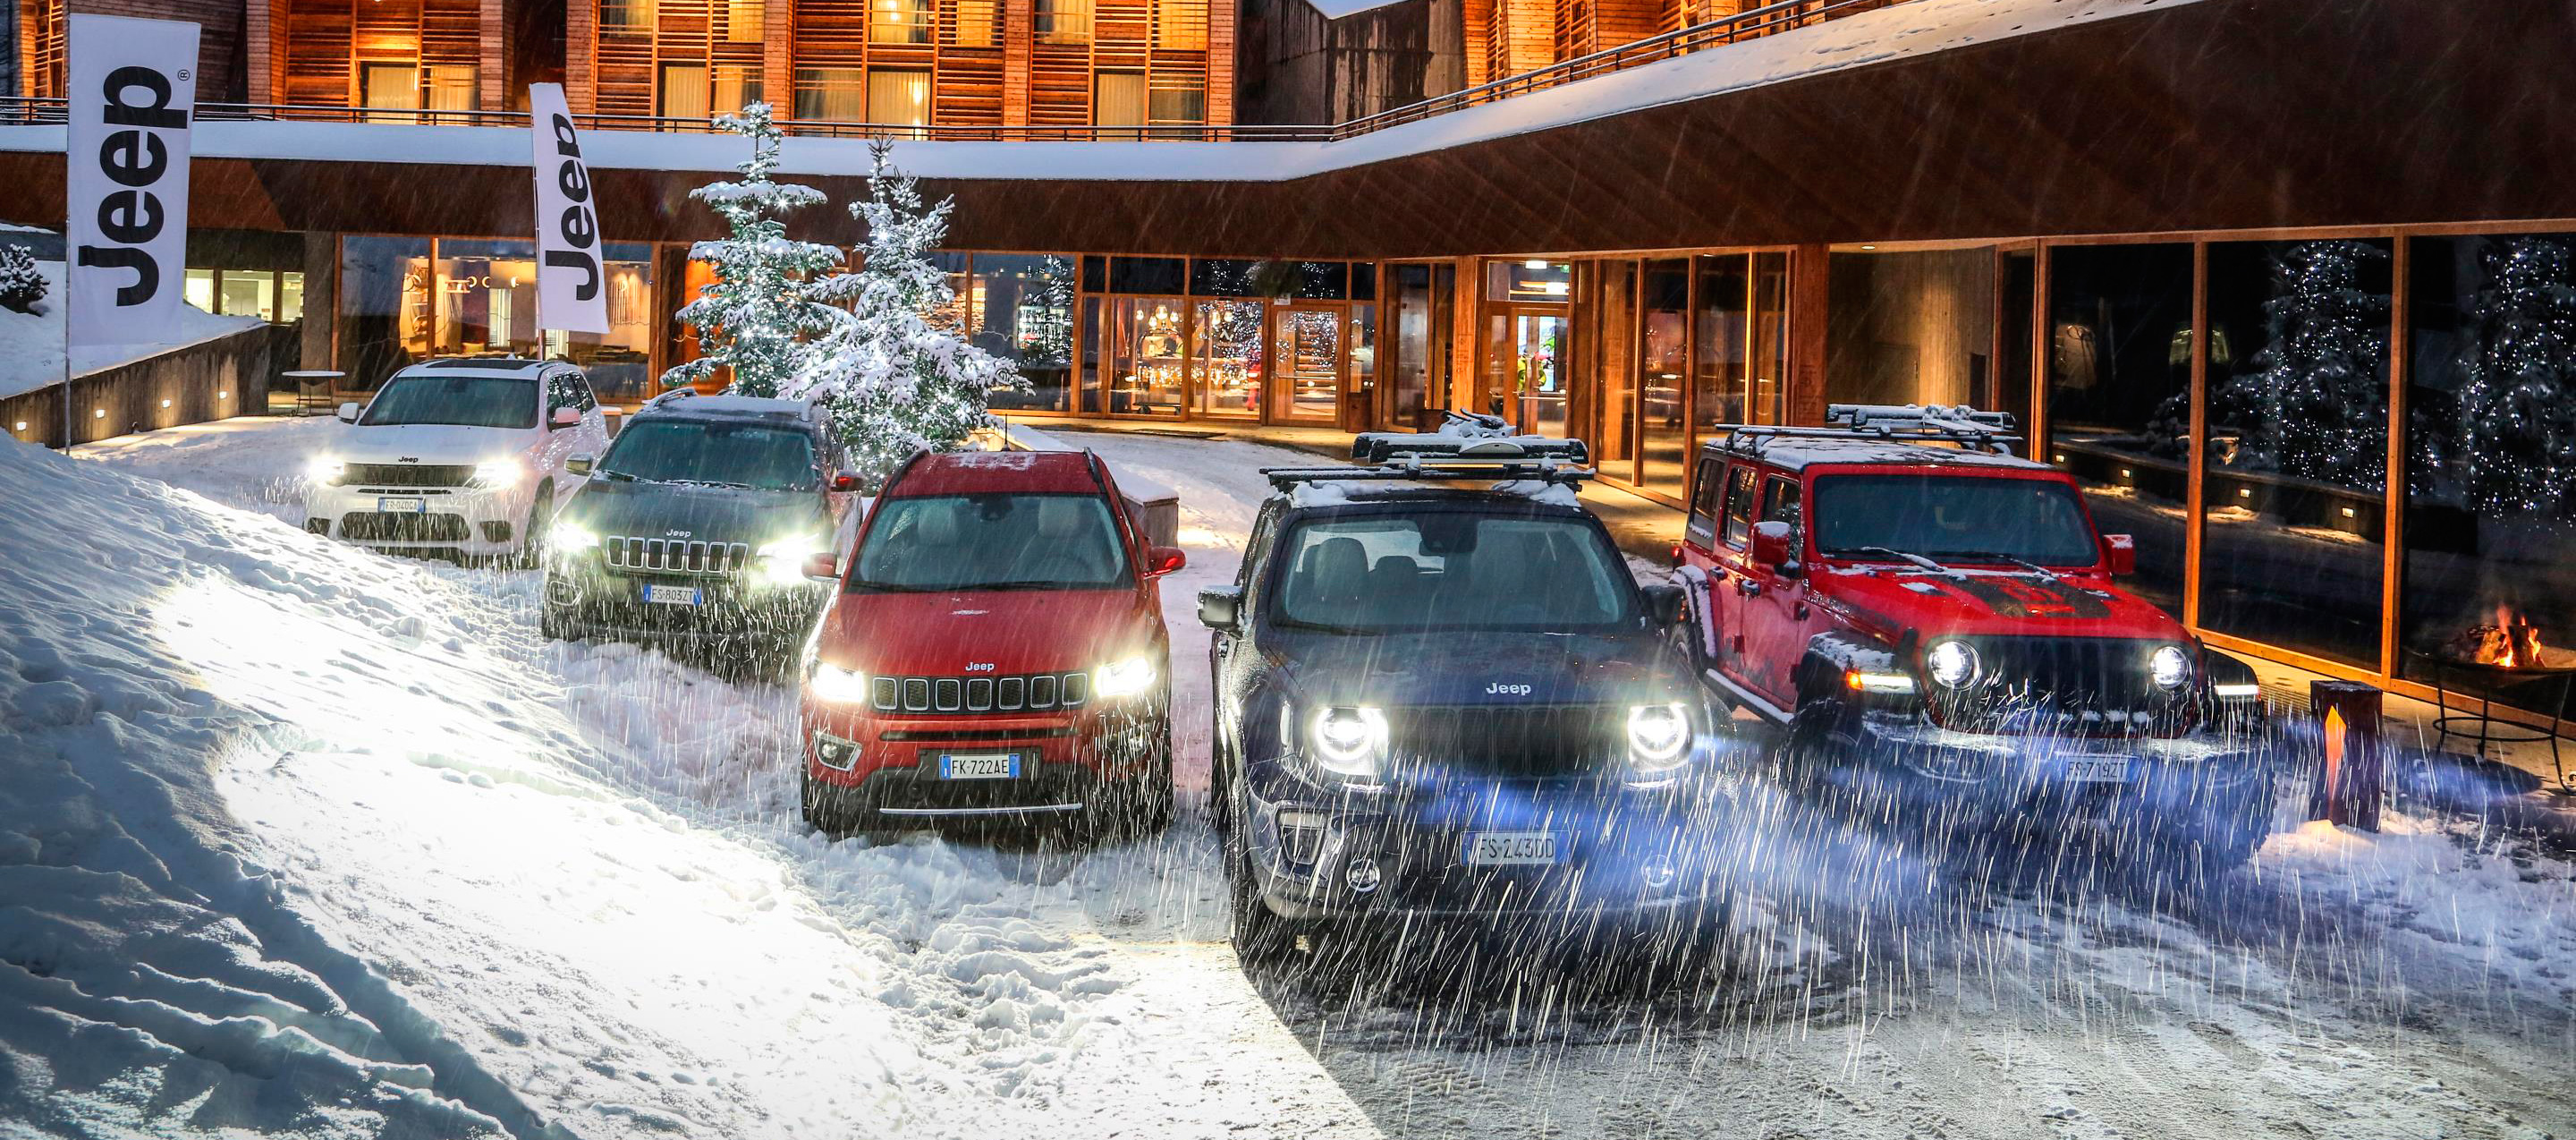 Jeep Winter Experience, no te la puede perder